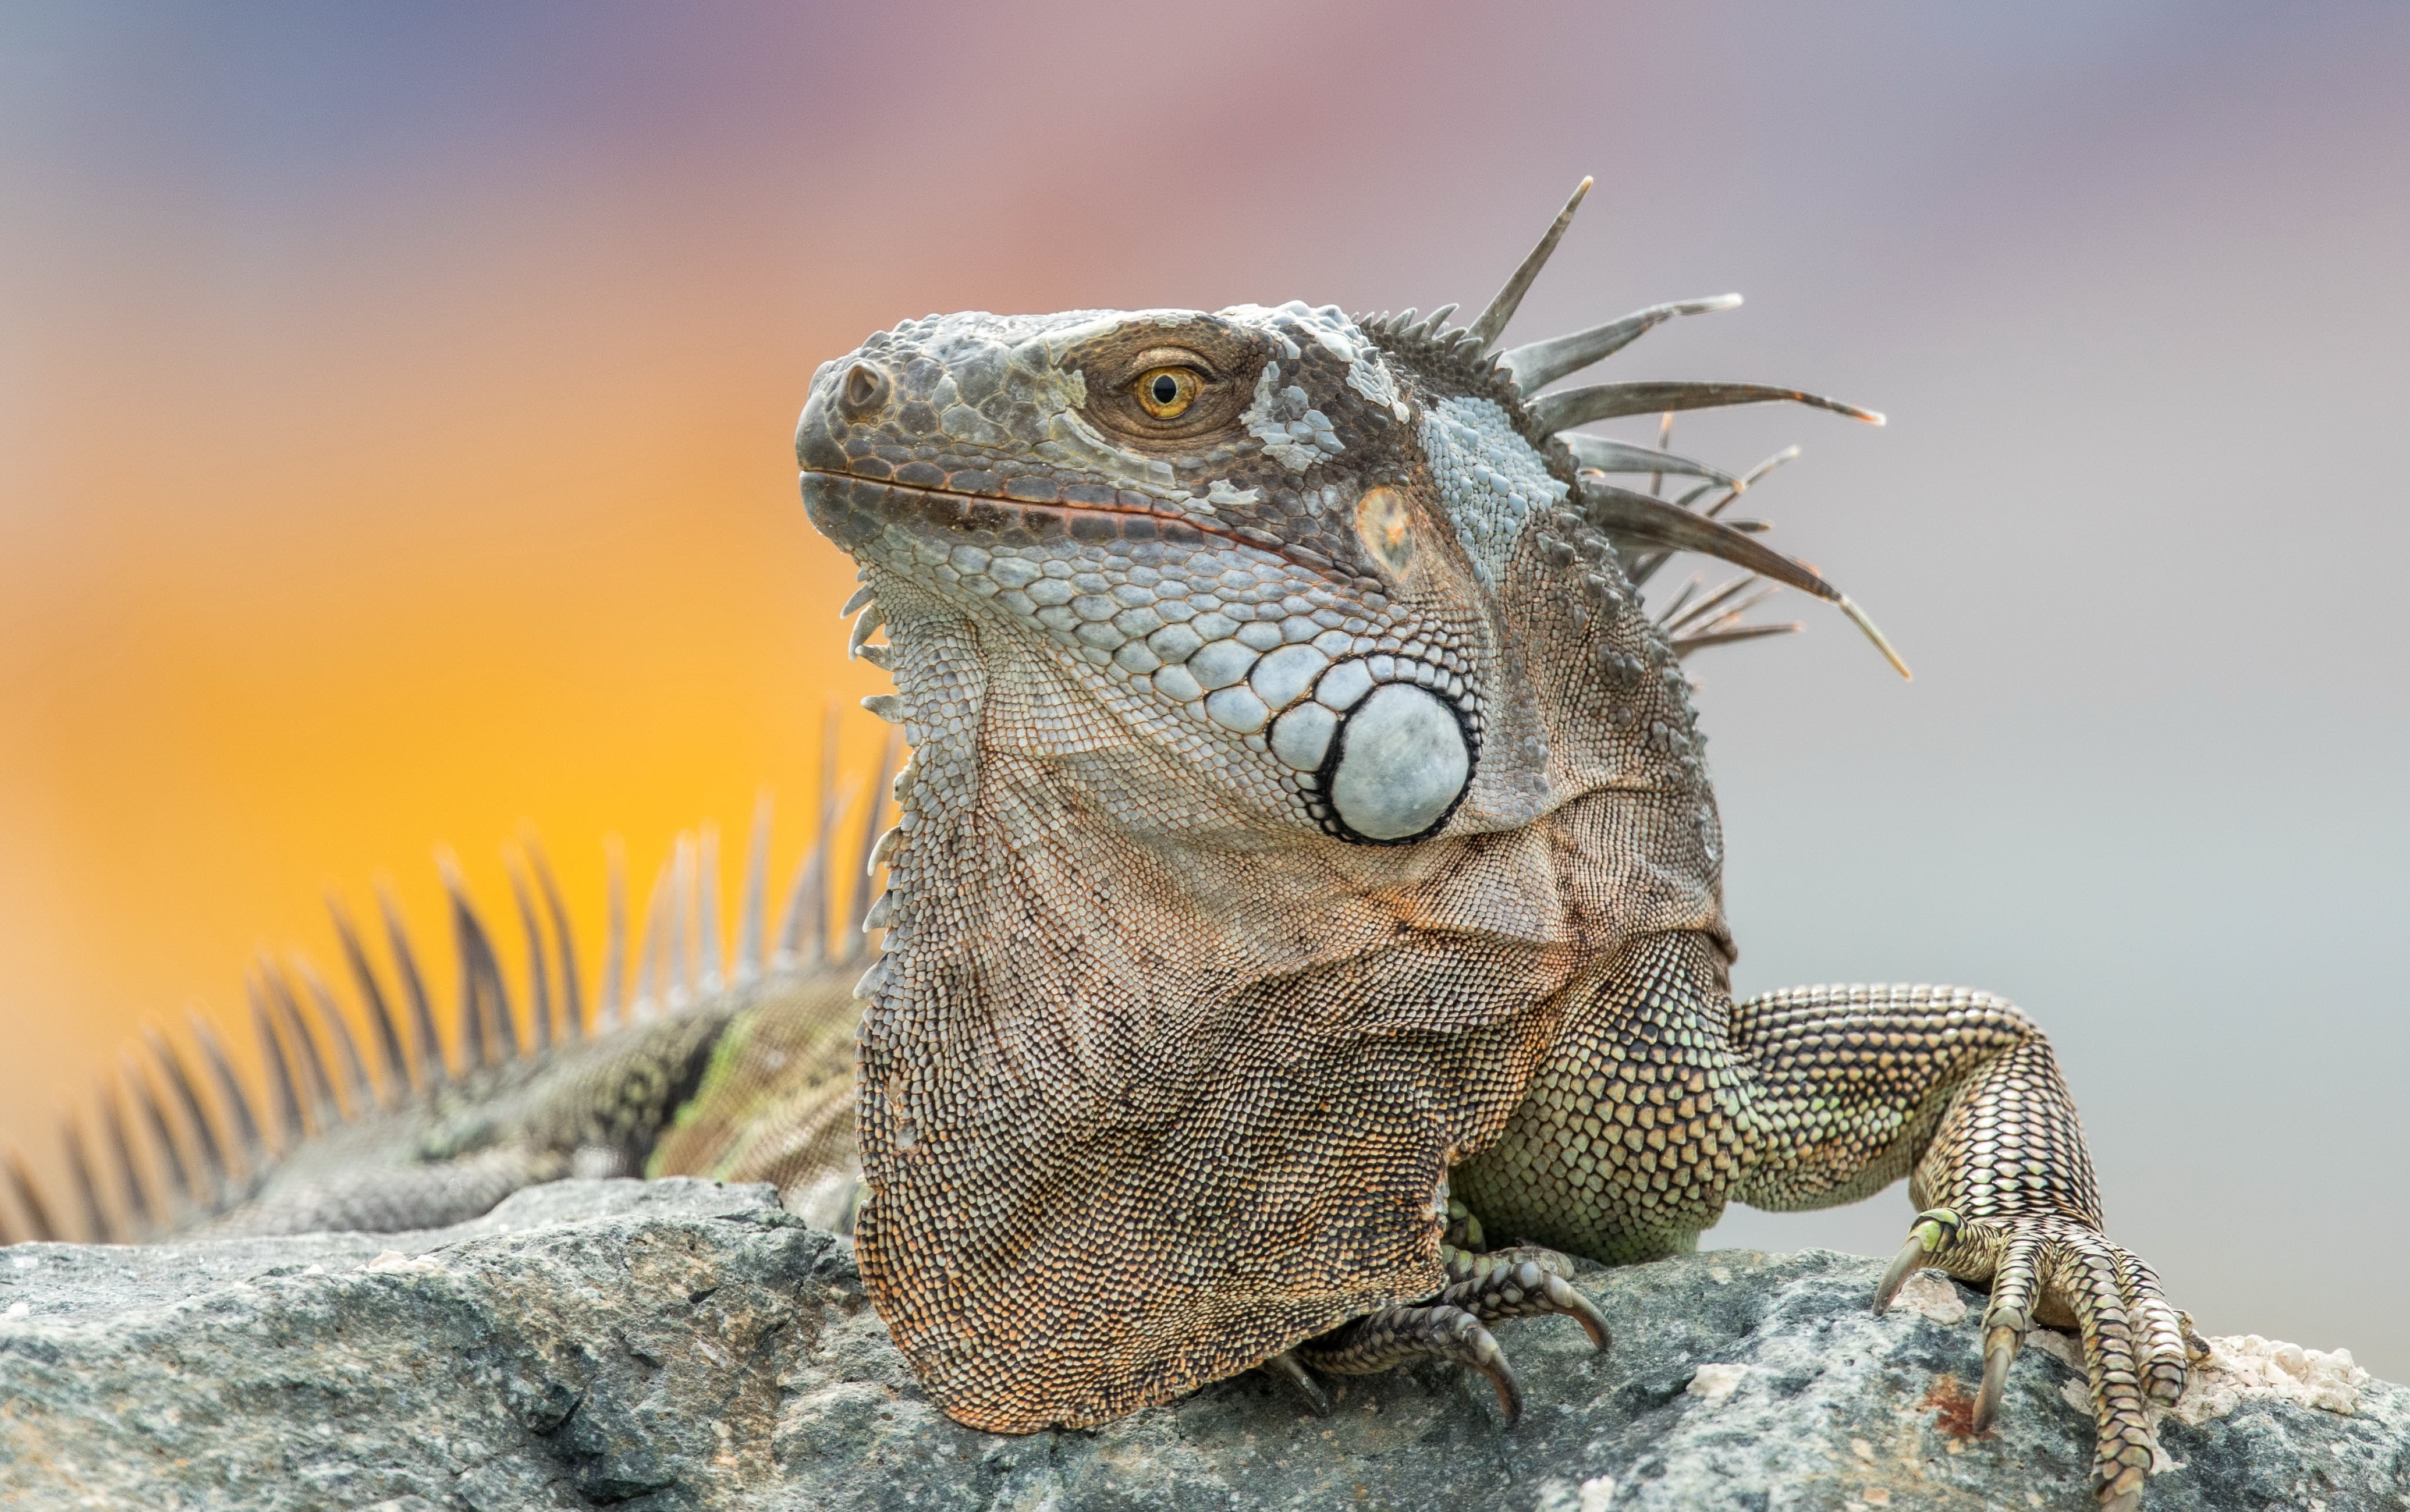 Descarga gratuita de fondo de pantalla para móvil de Animales, Reptil, Reptiles, Iguana.